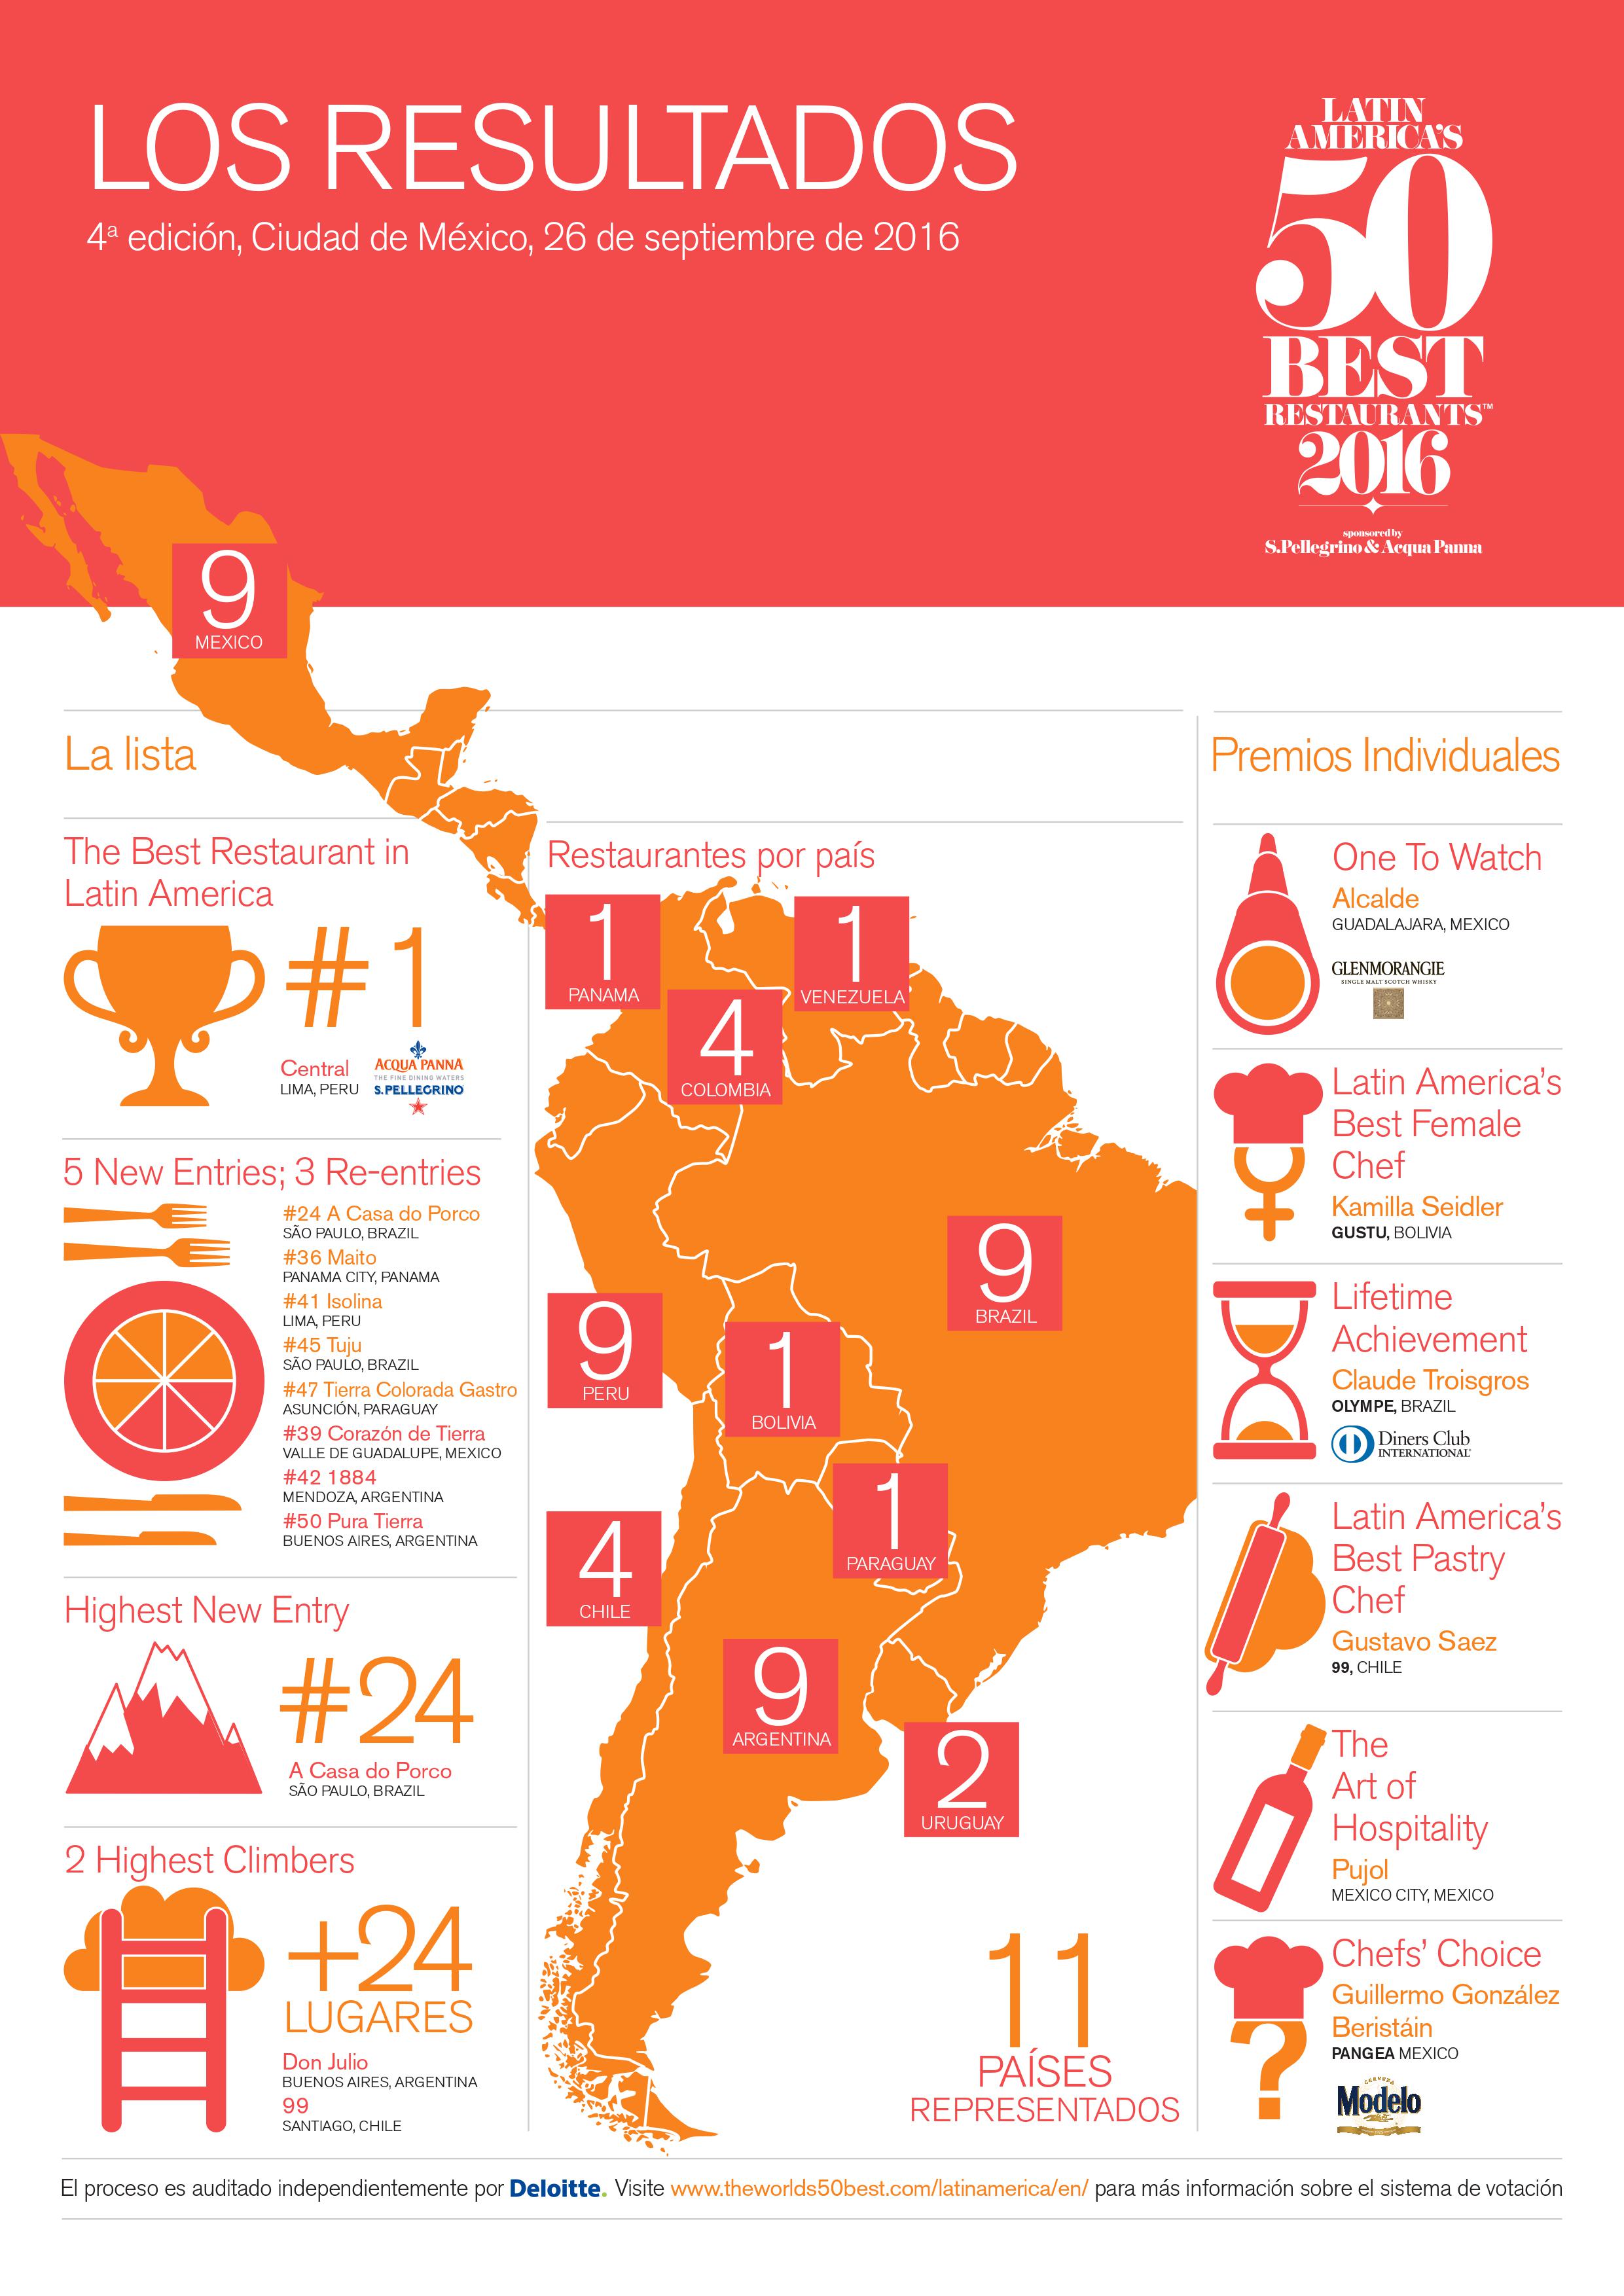 Melhores restaurantes da América Latina - Melhores restaurantes da América Latina